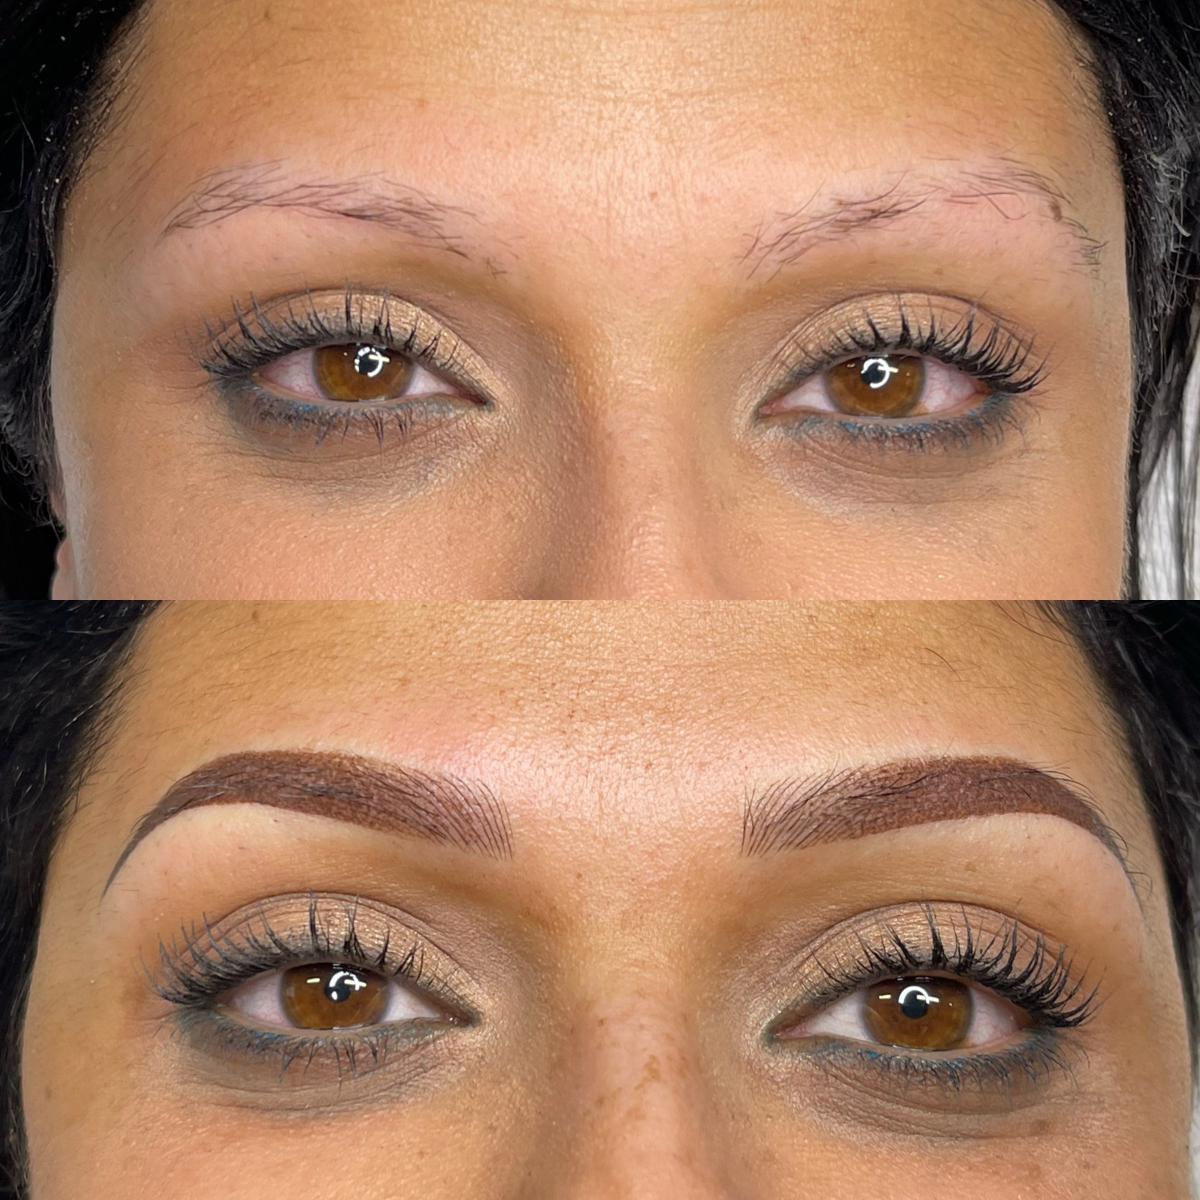 vor und nach dem permanent make up der augenbrauen